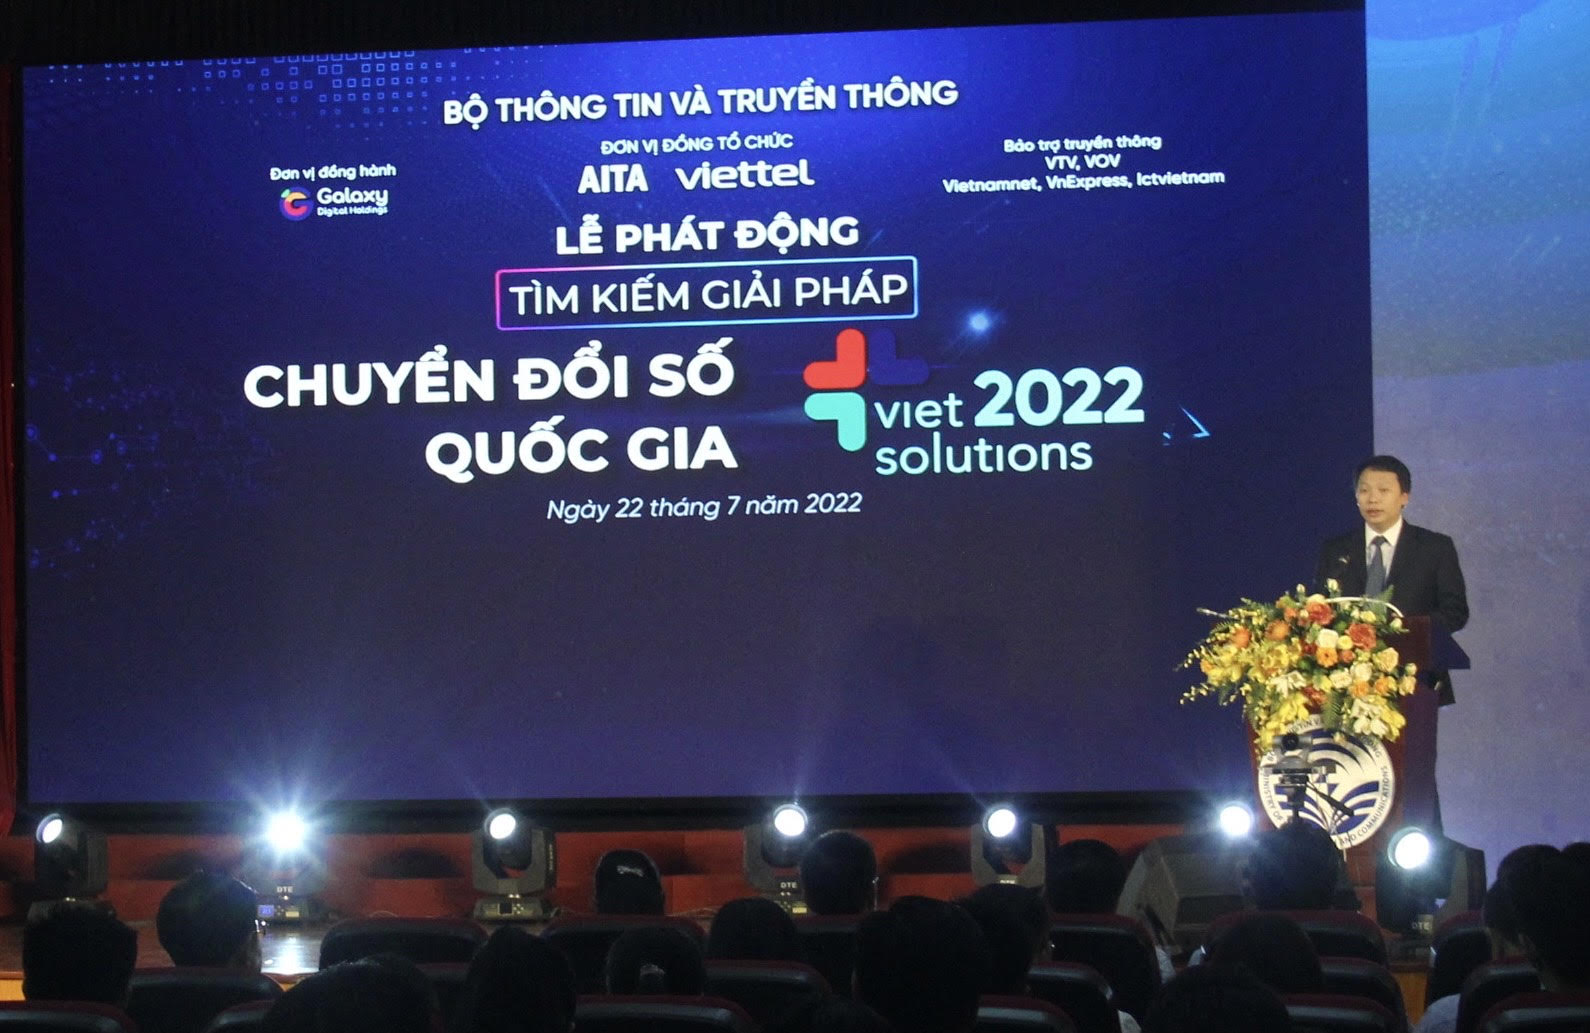 Tuyên truyền, lan tỏa Cuộc thi “Tìm kiếm giải pháp Chuyển đổi số Quốc gia – Viet Solutions” năm 2022